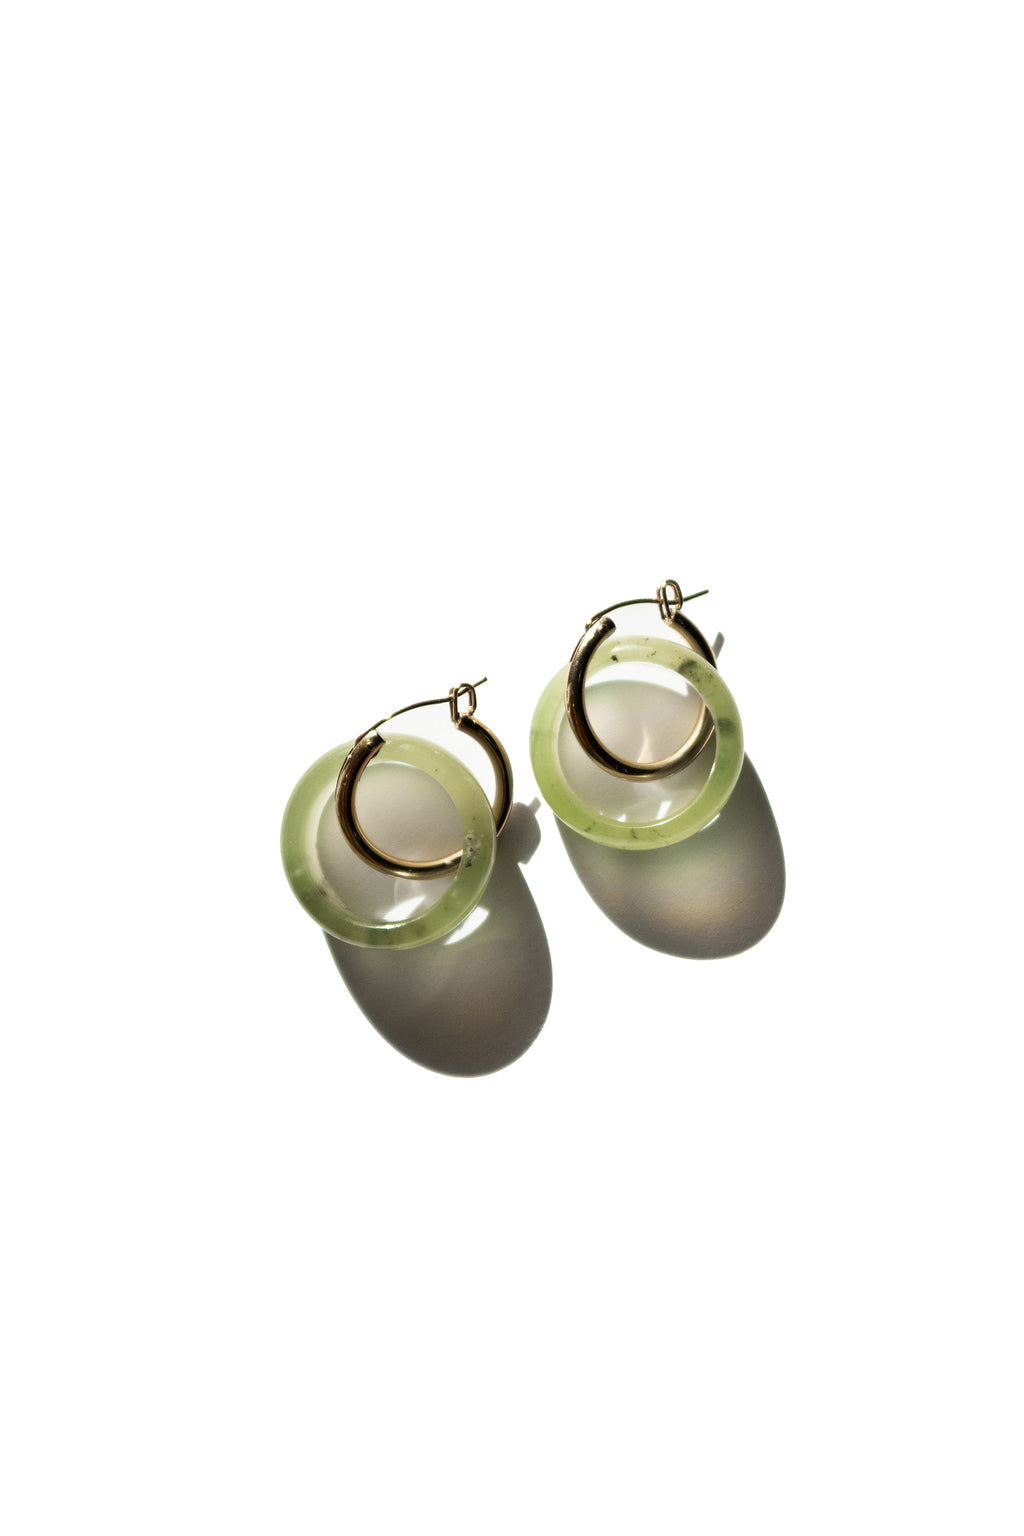 seree-amelie-skinny-green-hoop-earrings-quartzite-jade